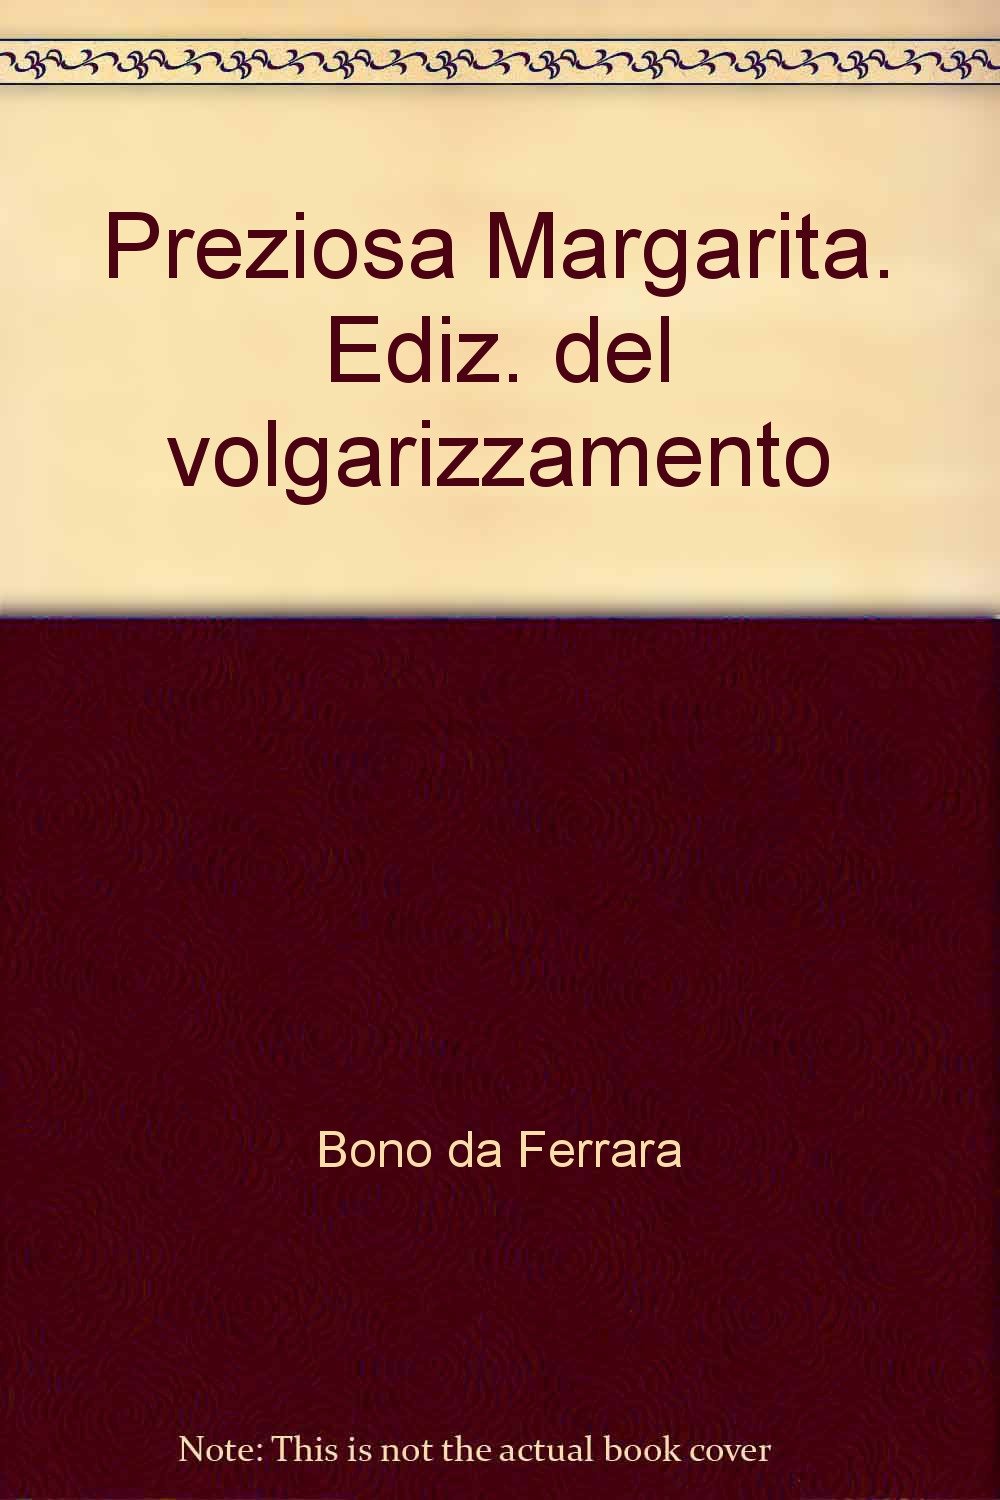 Libri Pietro Bono Da Ferrara - Preziosa Margarita Novella. Ediz. Del Volgarizzamento NUOVO SIGILLATO, EDIZIONE DEL 01/12/1976 SUBITO DISPONIBILE